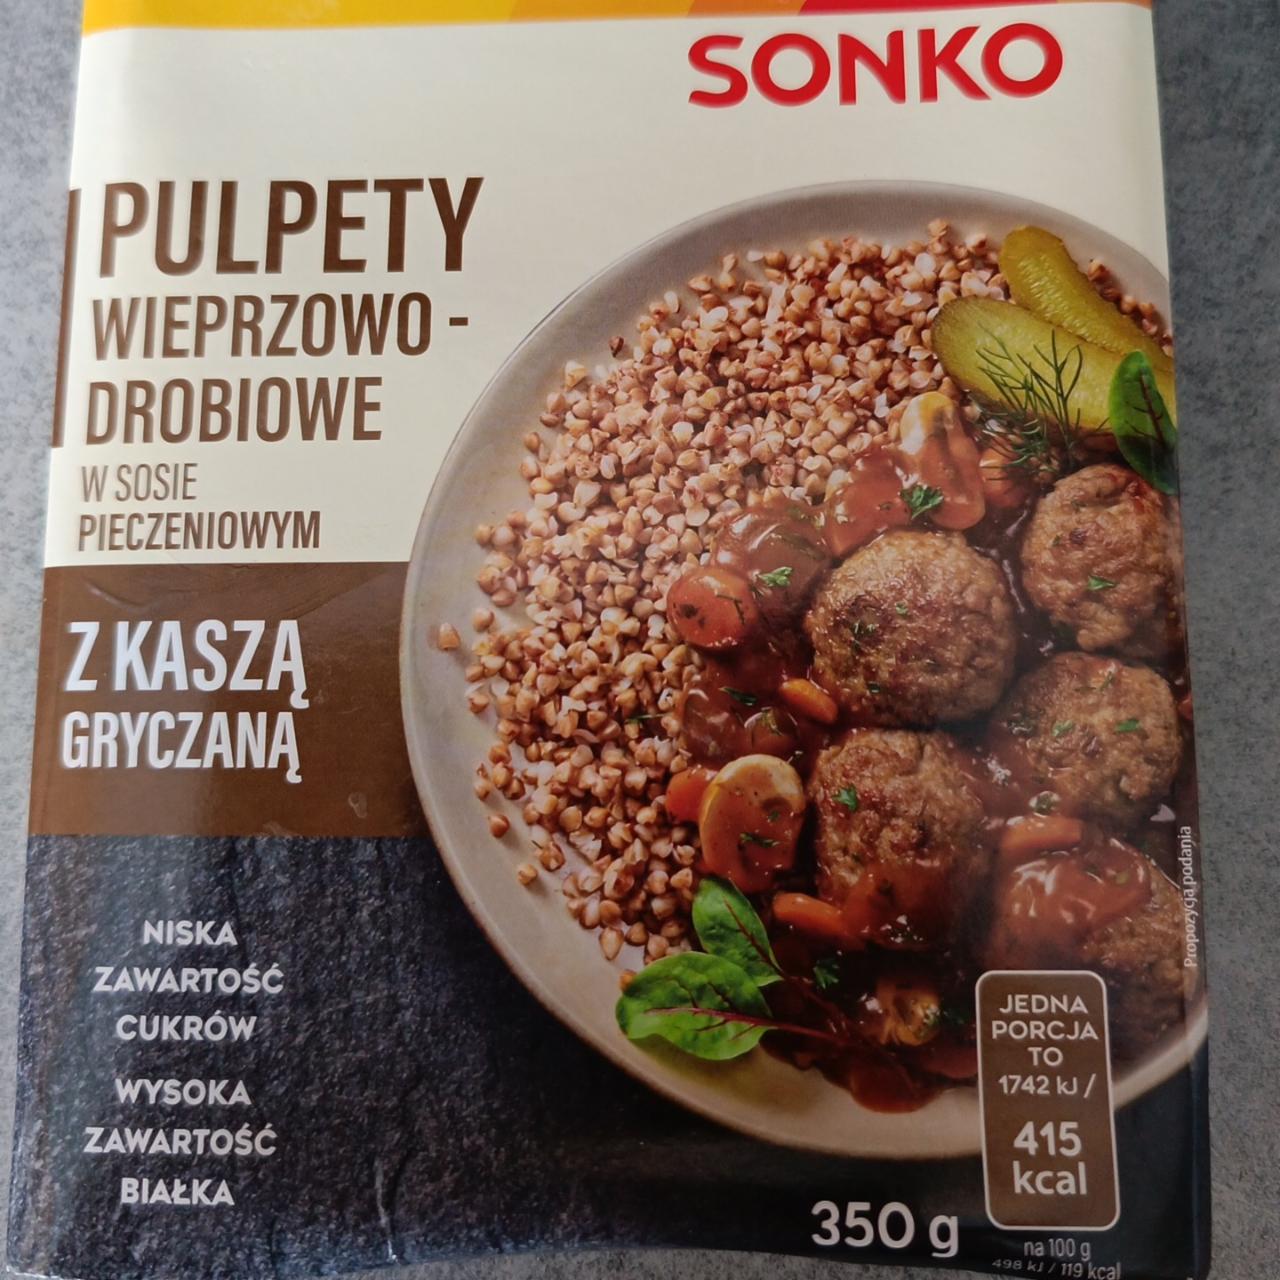 Zdjęcia - Pulpety Wieprzowo-drobiowe w sosie pieczeniowym z kaszą gryczaną SONKO